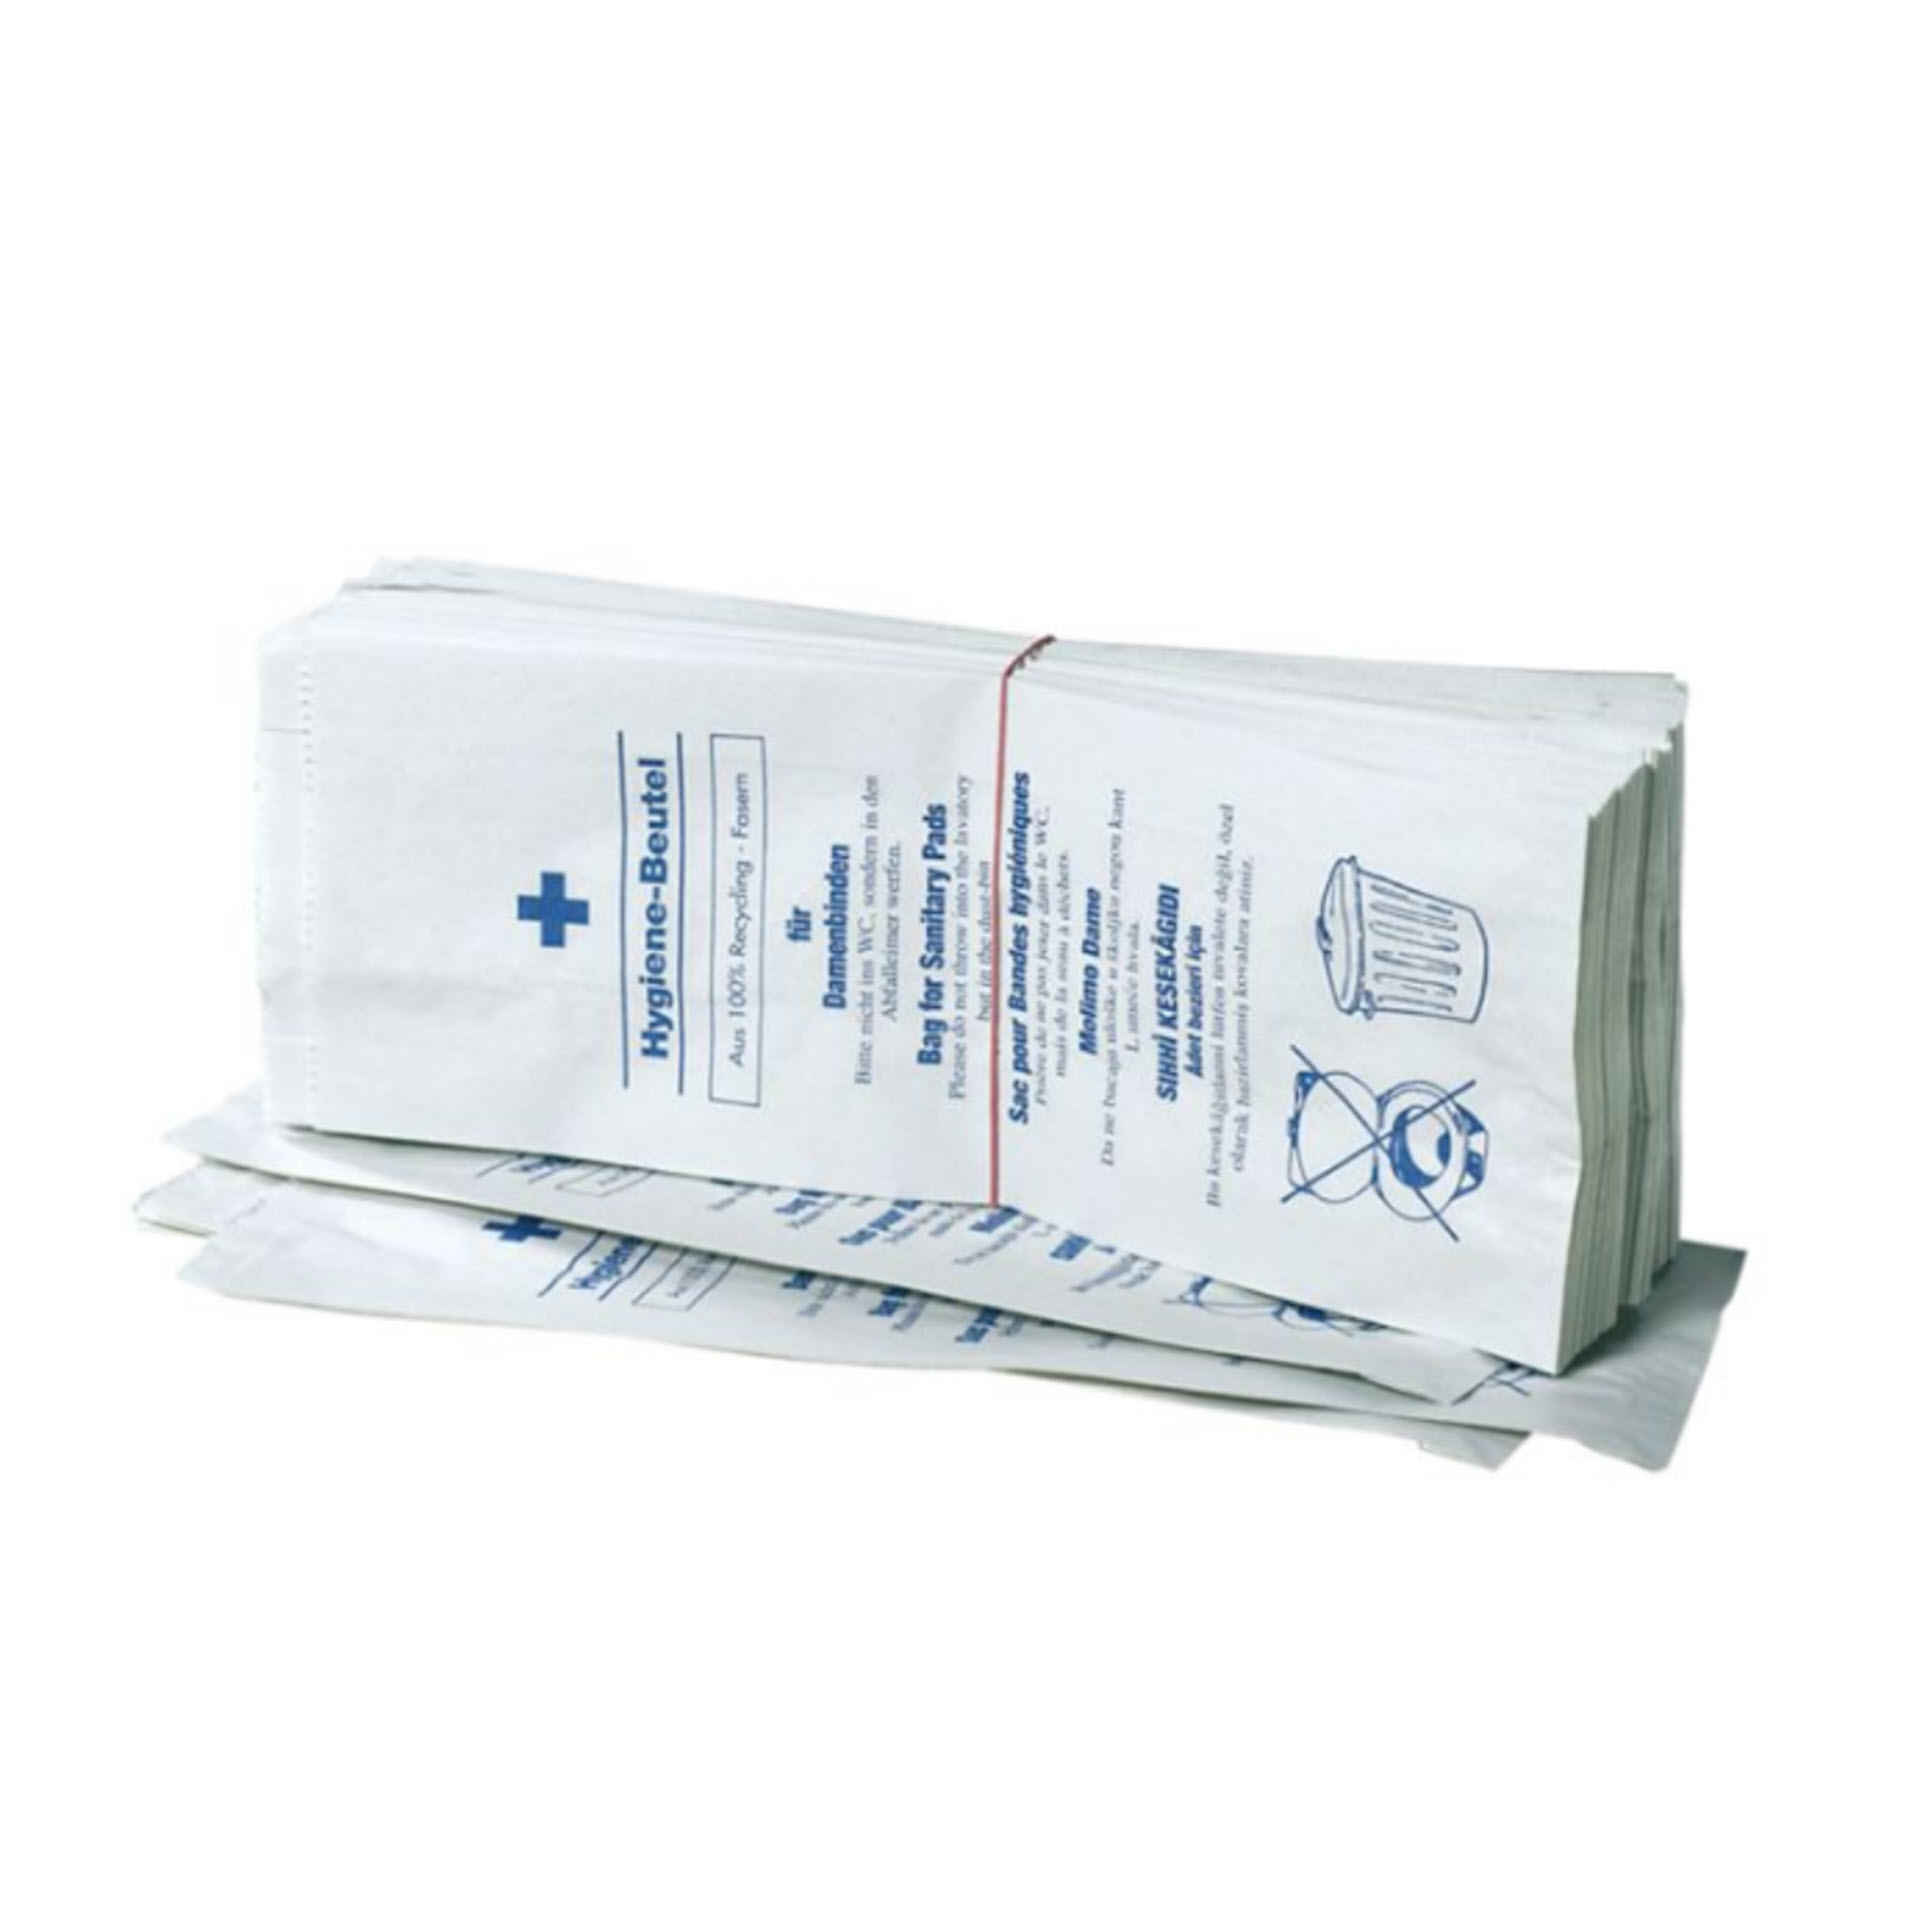 Fripa Damen-Hygienebeutel 5-sprachig bedruckt - 1 Karton mit 10 Pack á 100 Stück - 2410001